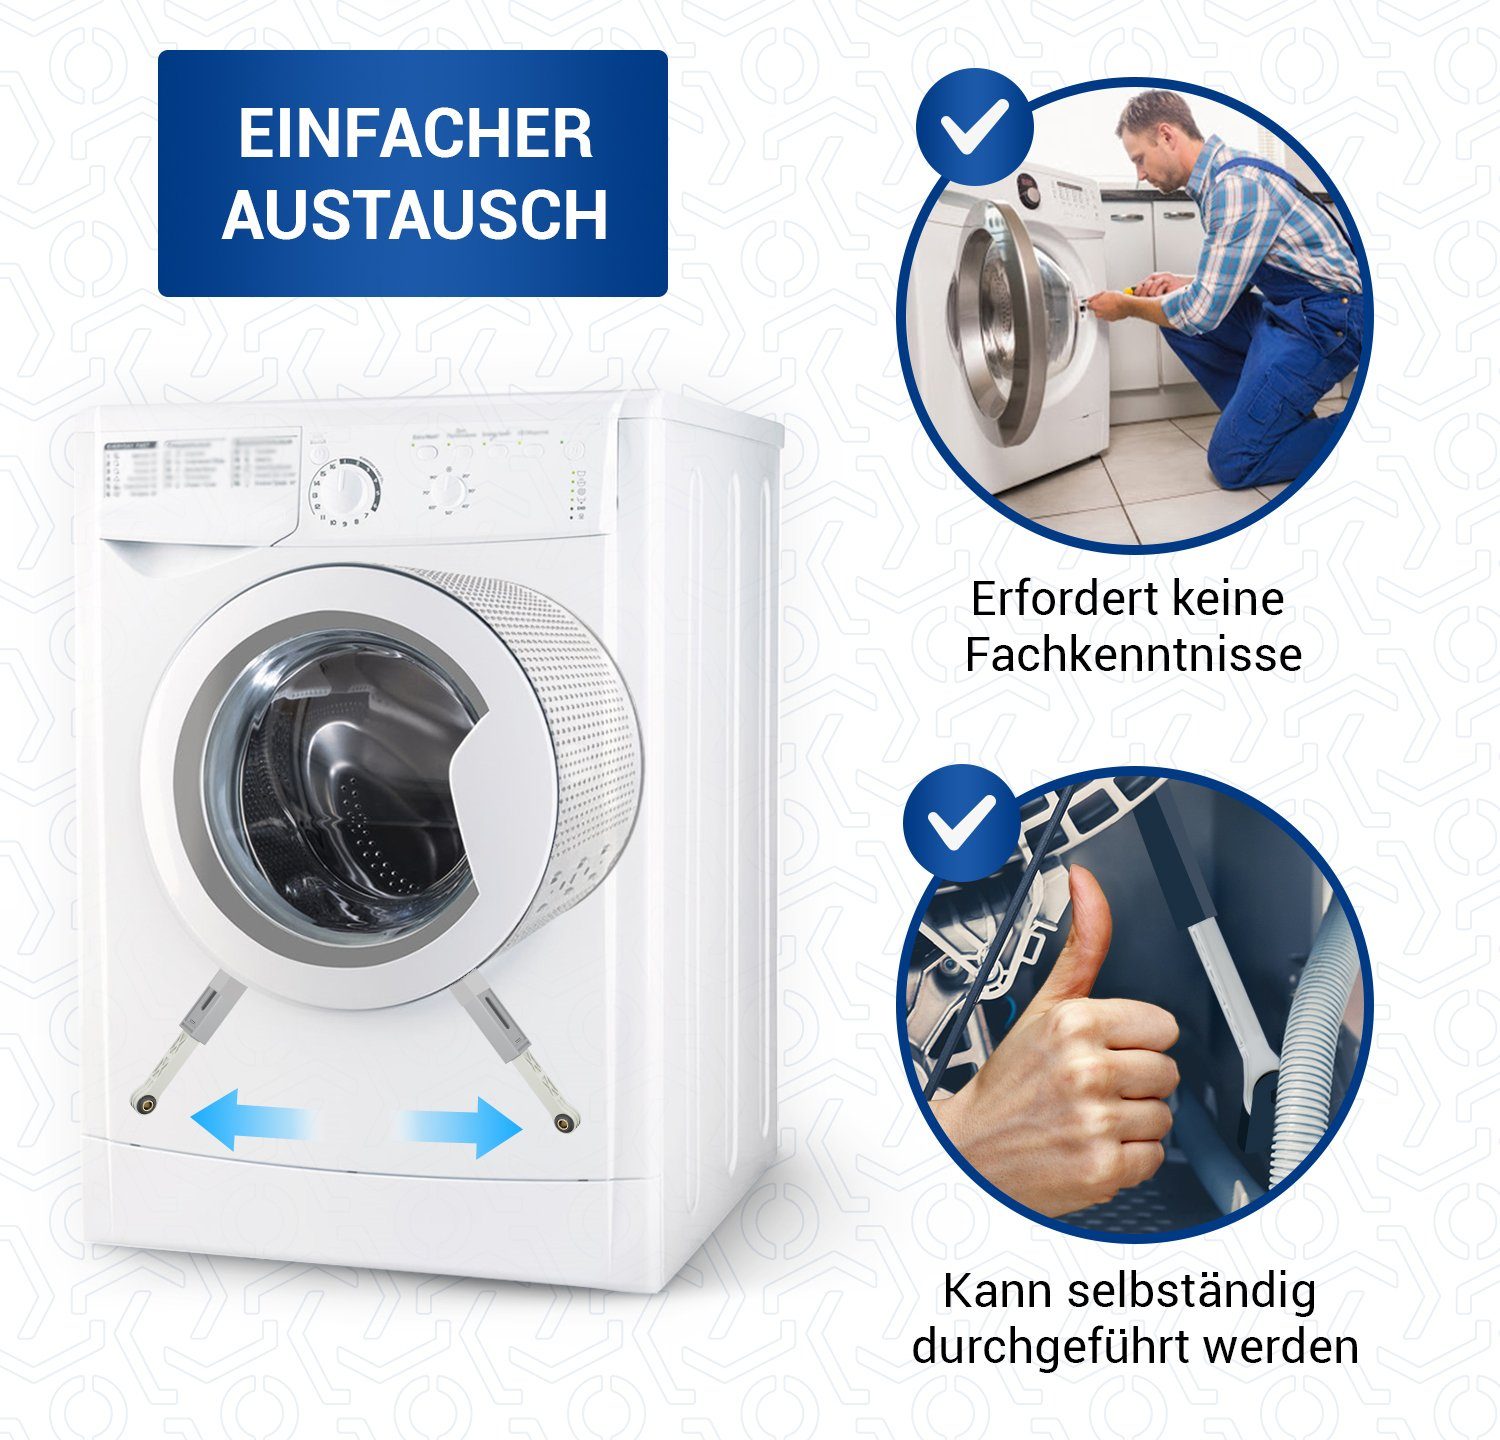 für Ersatz Stoßdämpfer 2 Waschmaschine mit VIOKS Vibrationsdämpfer 90N Hülsen für Waschtrockner (1-St), 00742719, Bosch